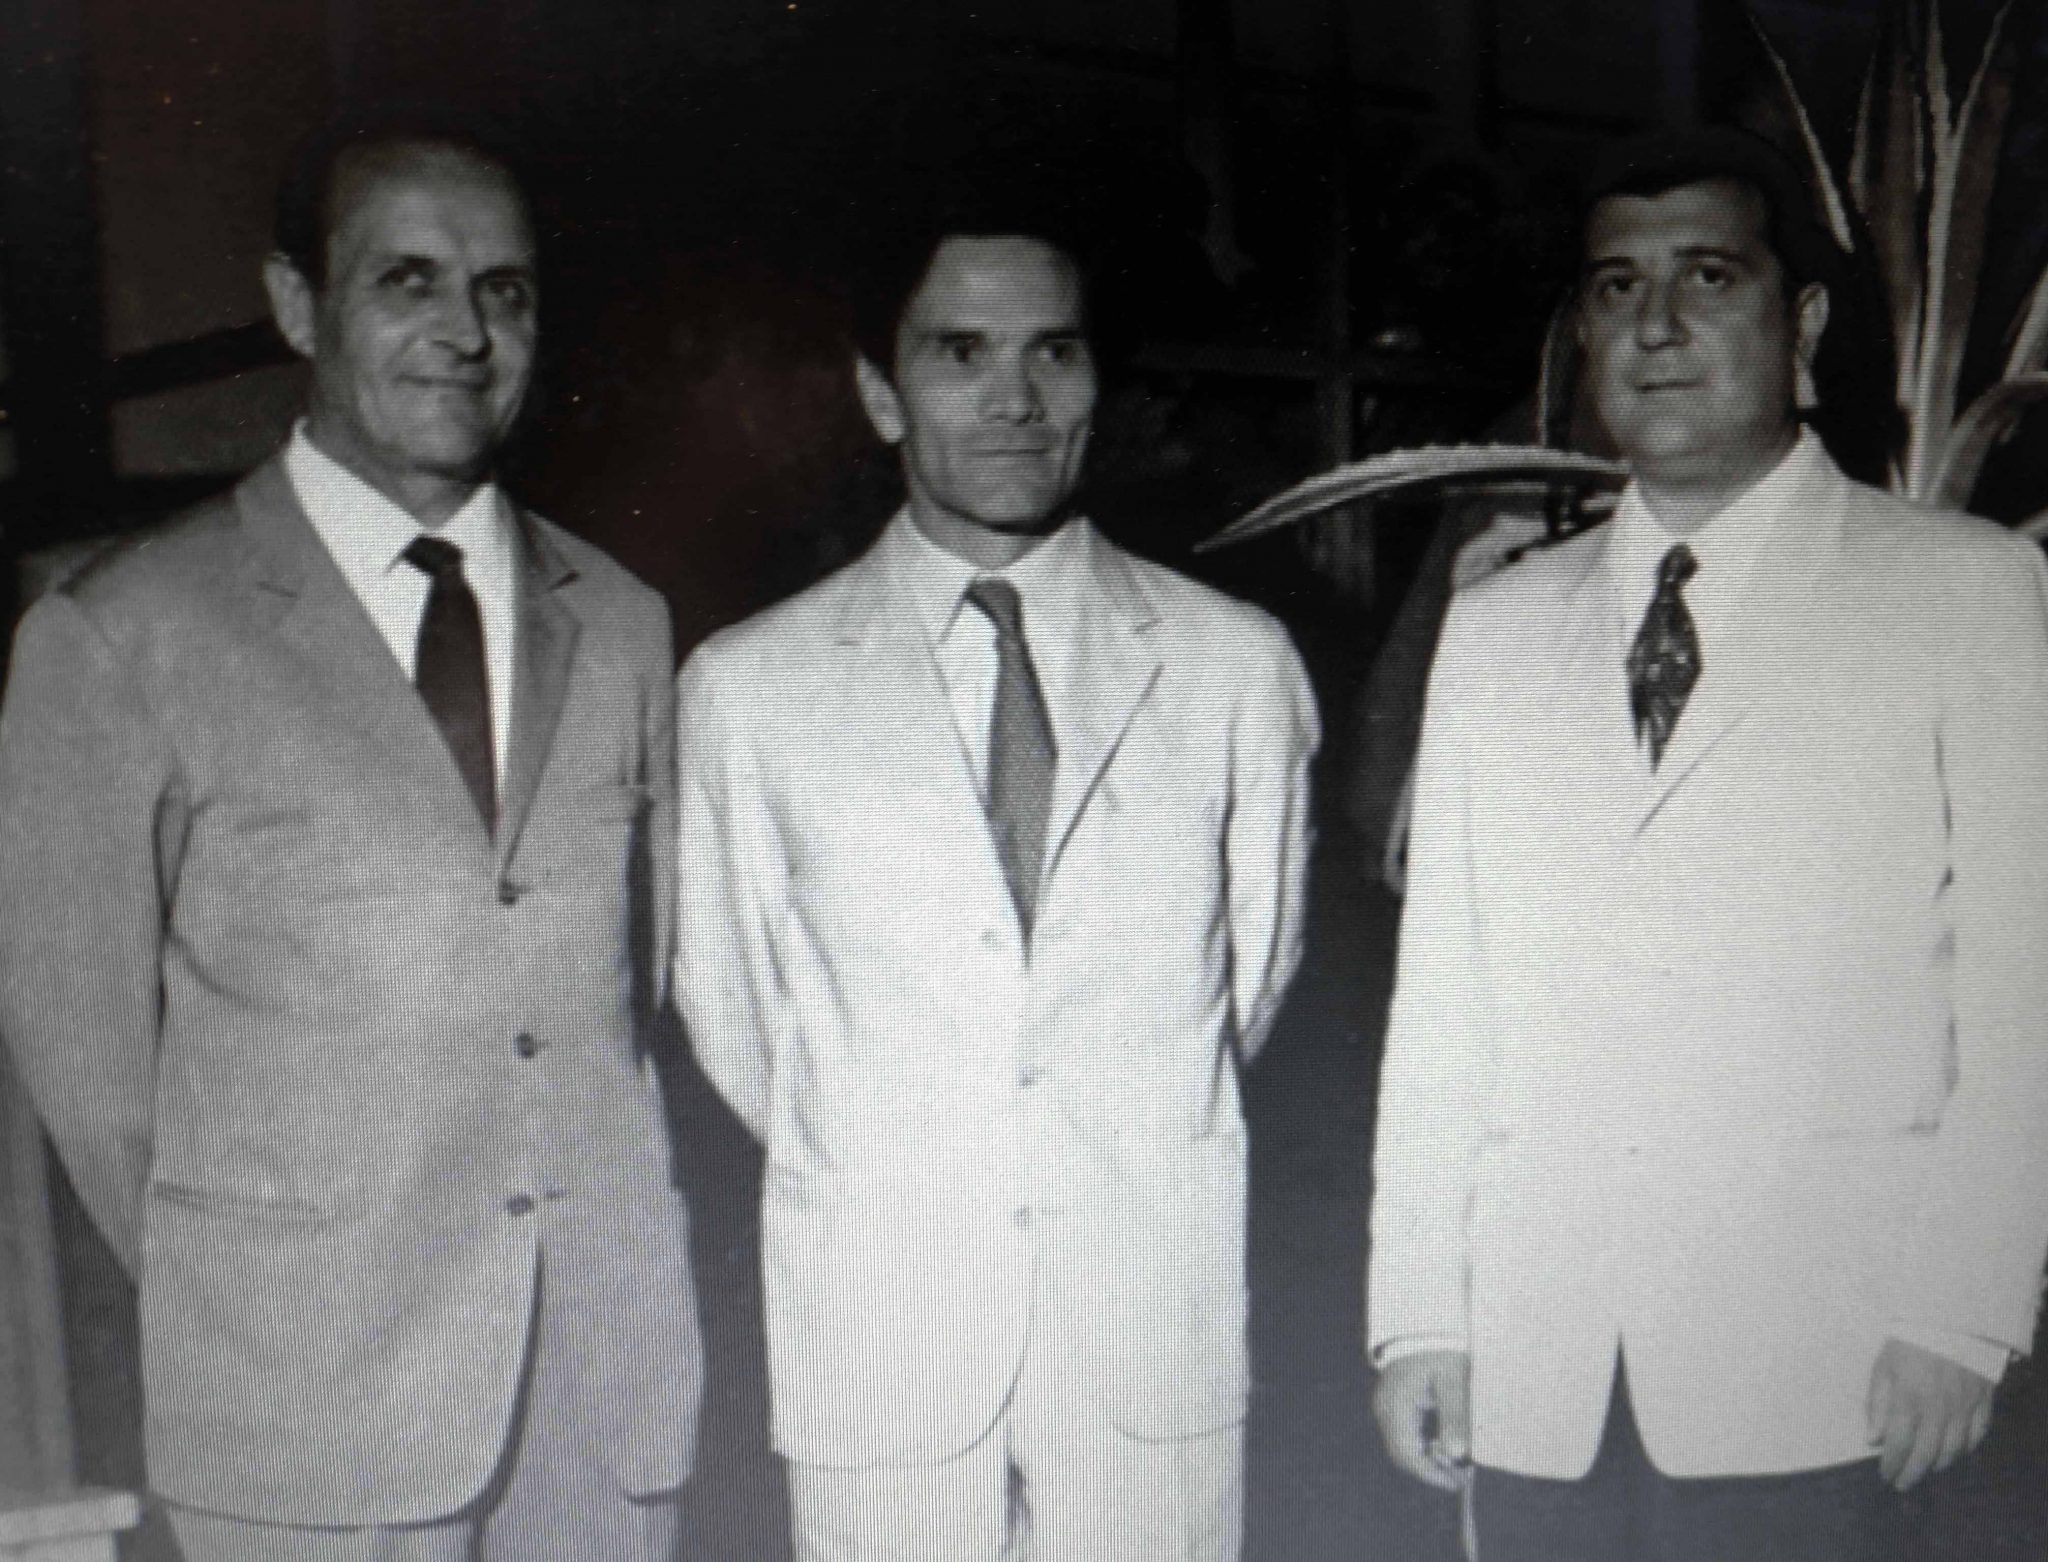 Foto di Epimaco 'Pico' Zangheri che ritrae Pier Paolo Pasolini con Biagio Cenni e il presidente dell’Azienda di Soggiorno, Giuseppe Mingozzi.